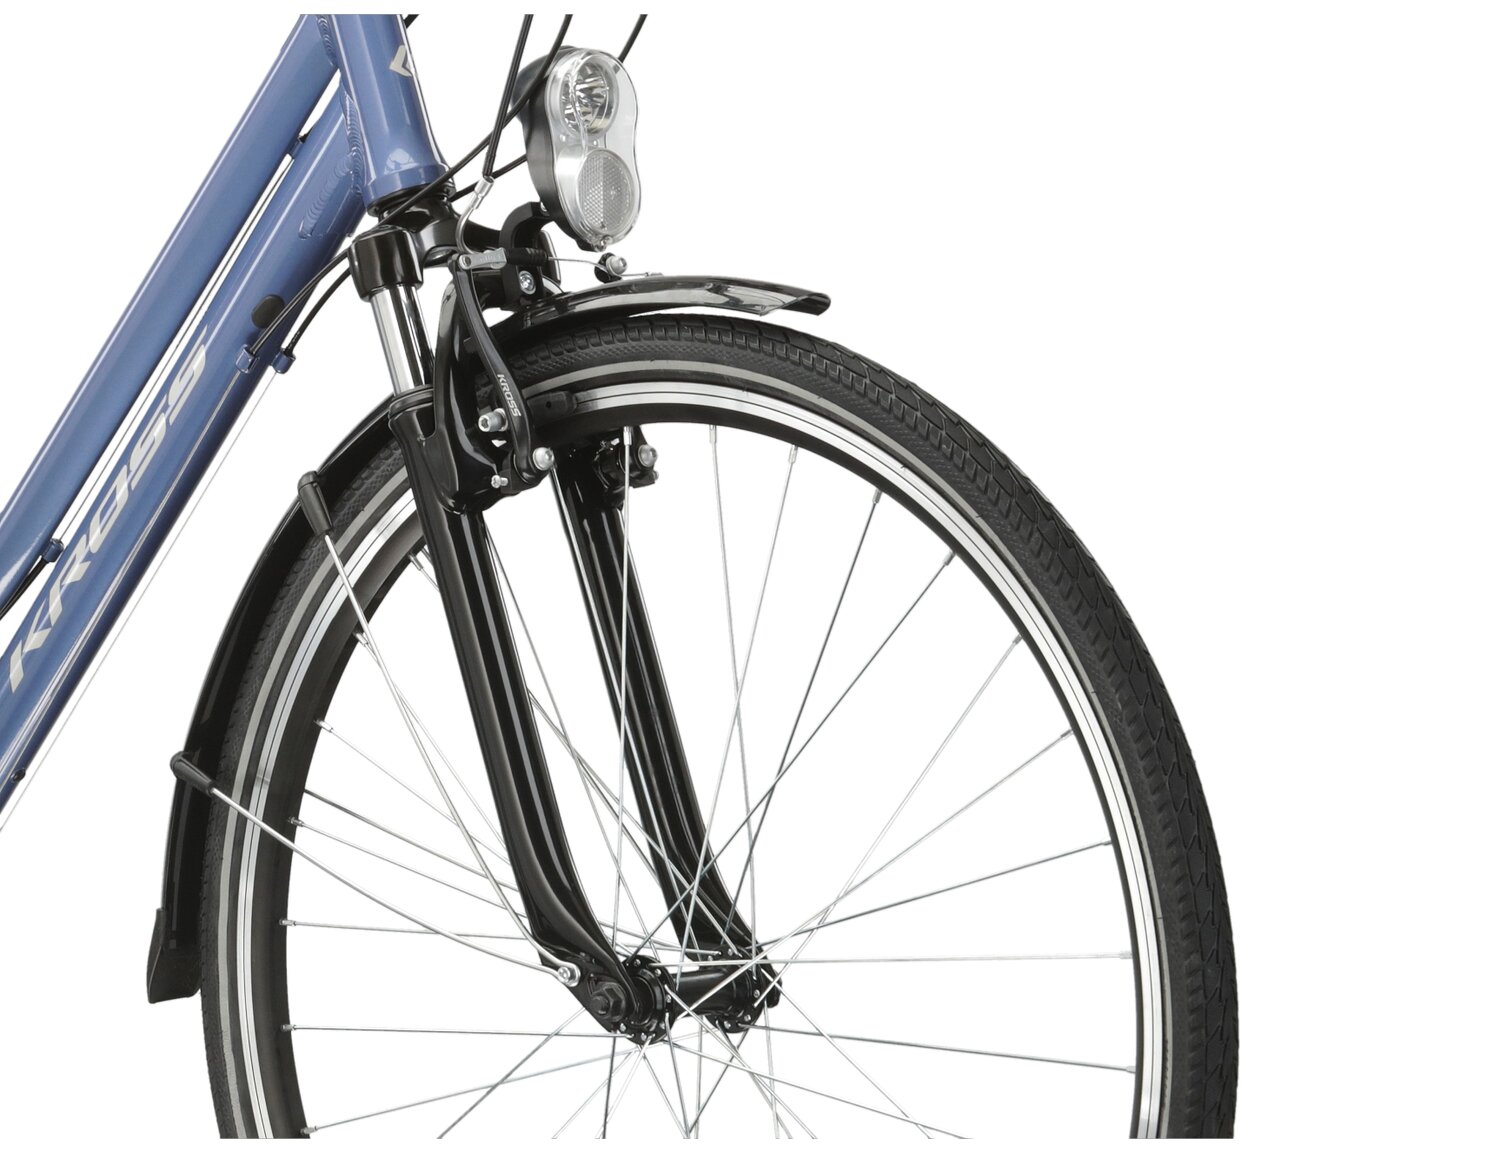 Aluminowa rama, amortyzowany widelec KROSS oraz opony Wanda w rowerze trekkingowym damskim KROSS Trans 2.0 